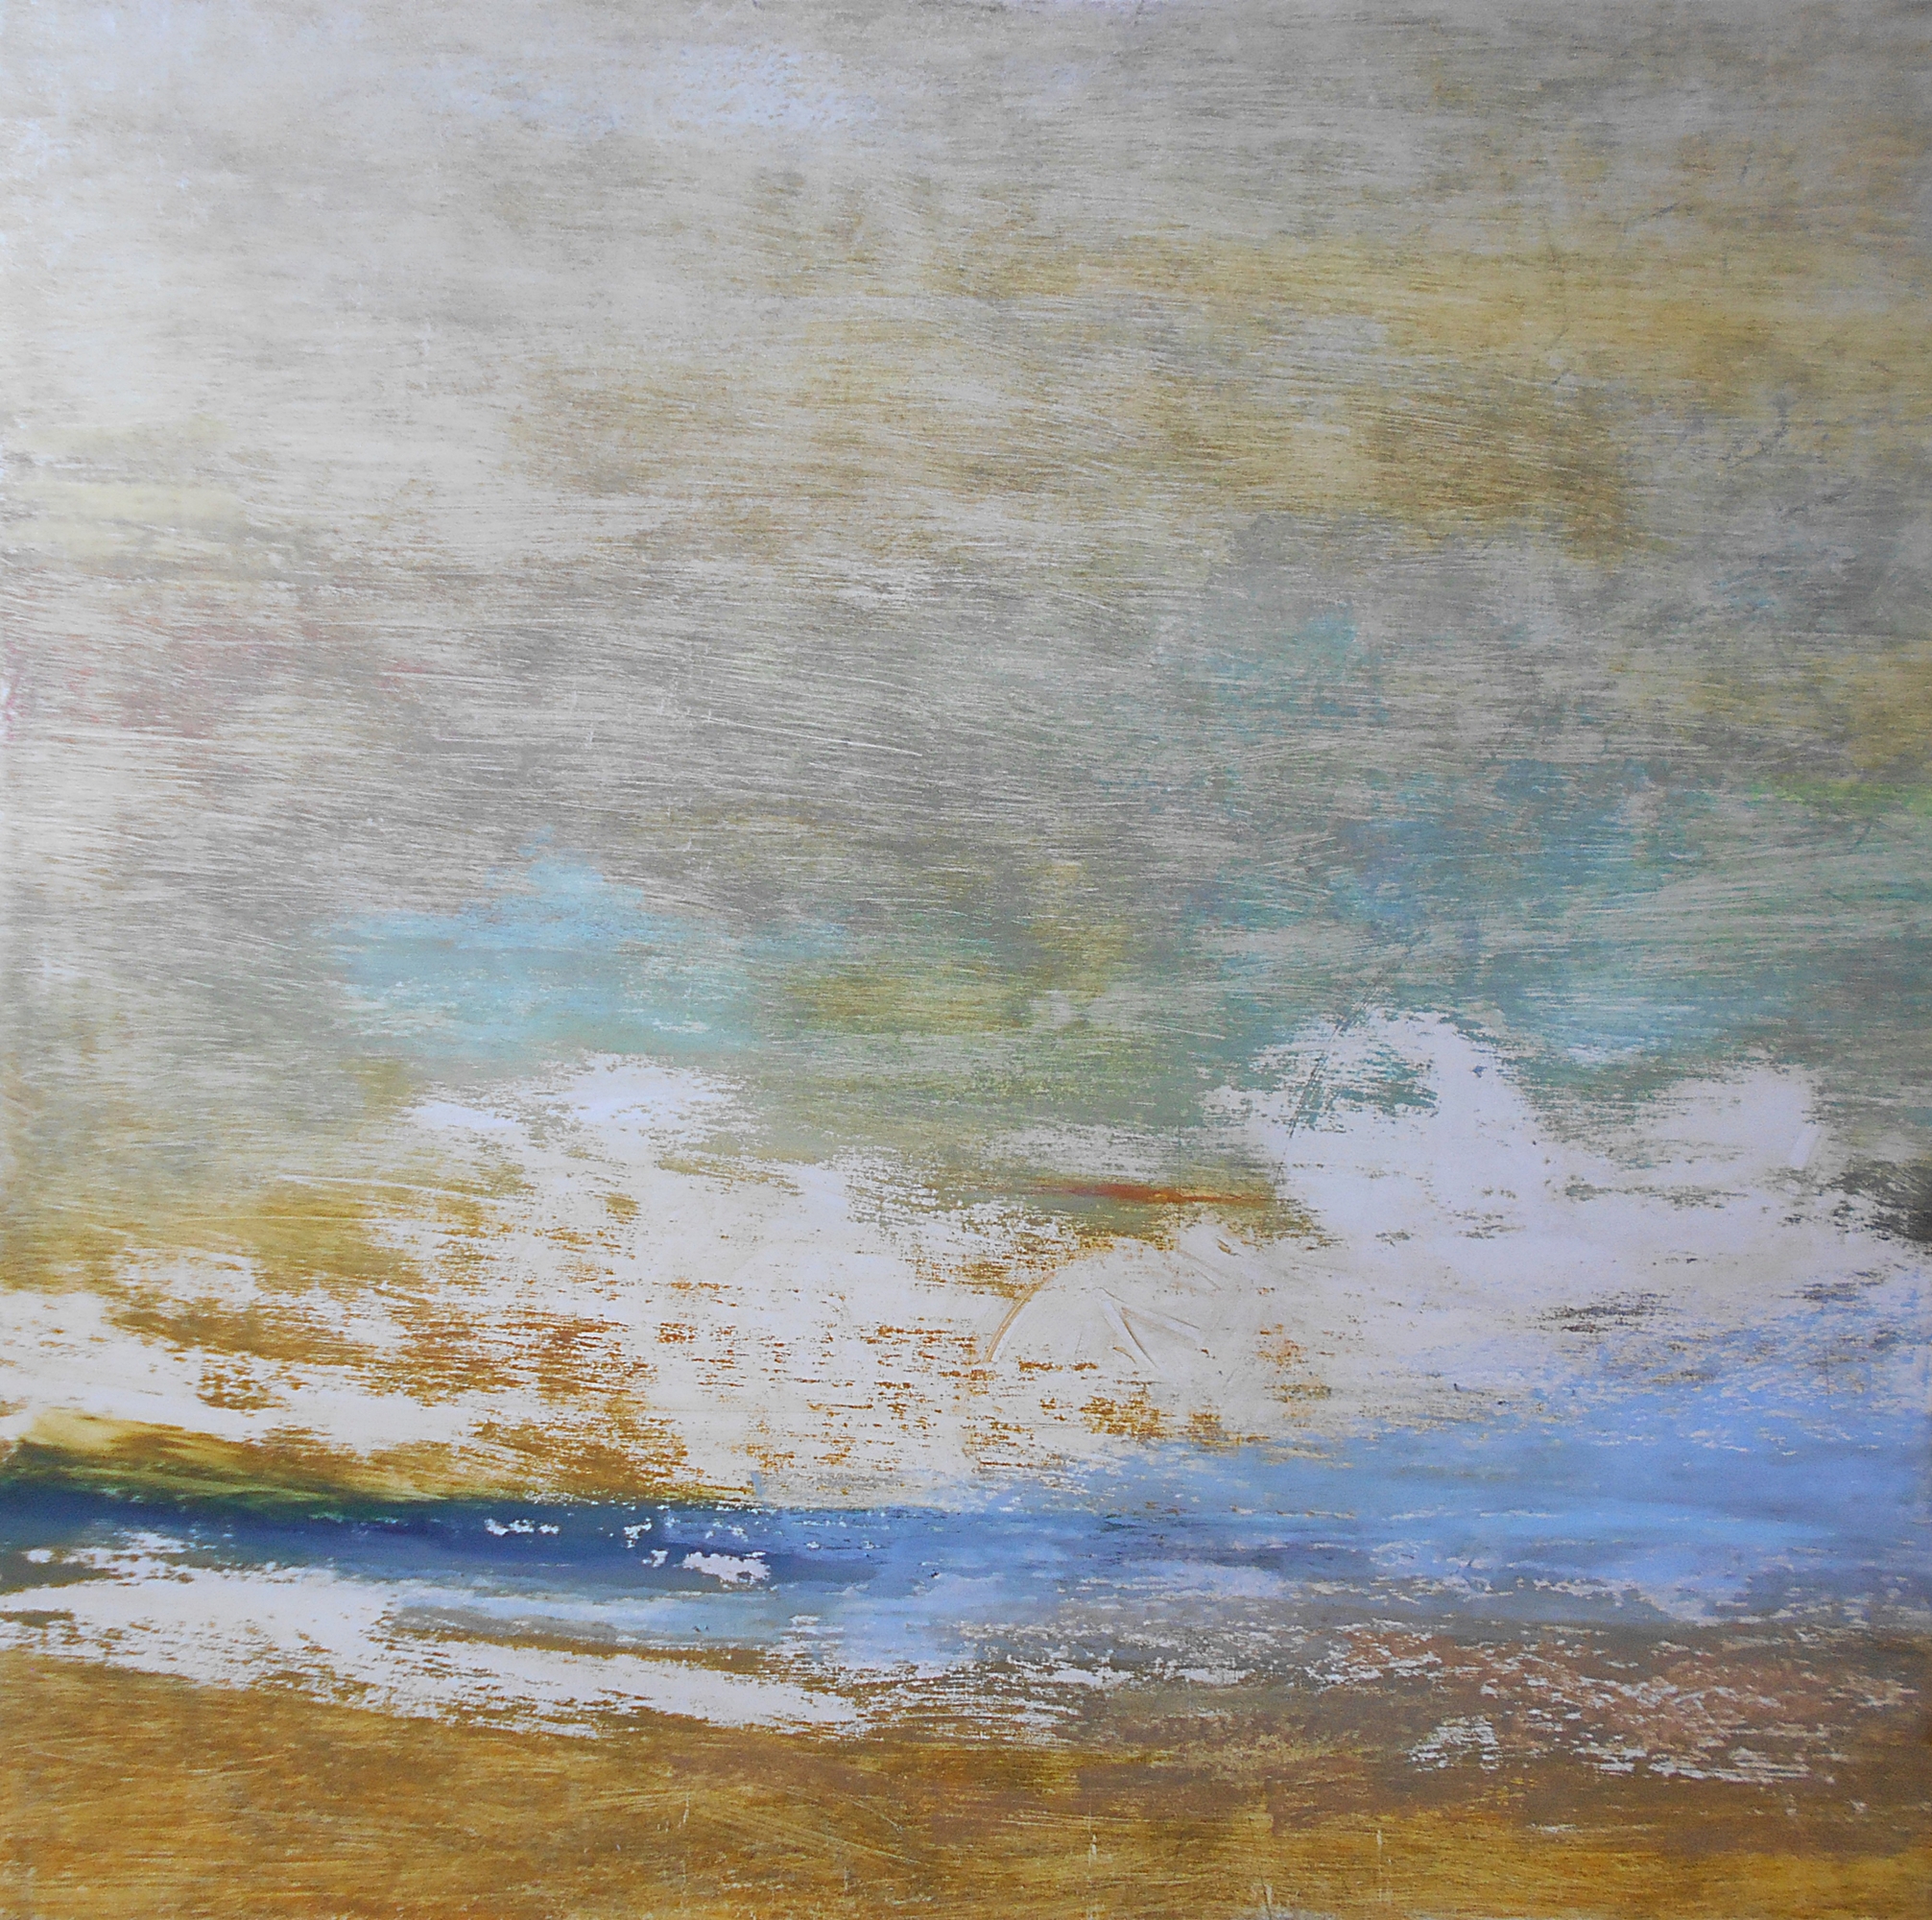 51.Landscape, 70x70cm, oil colour on paper, 2019